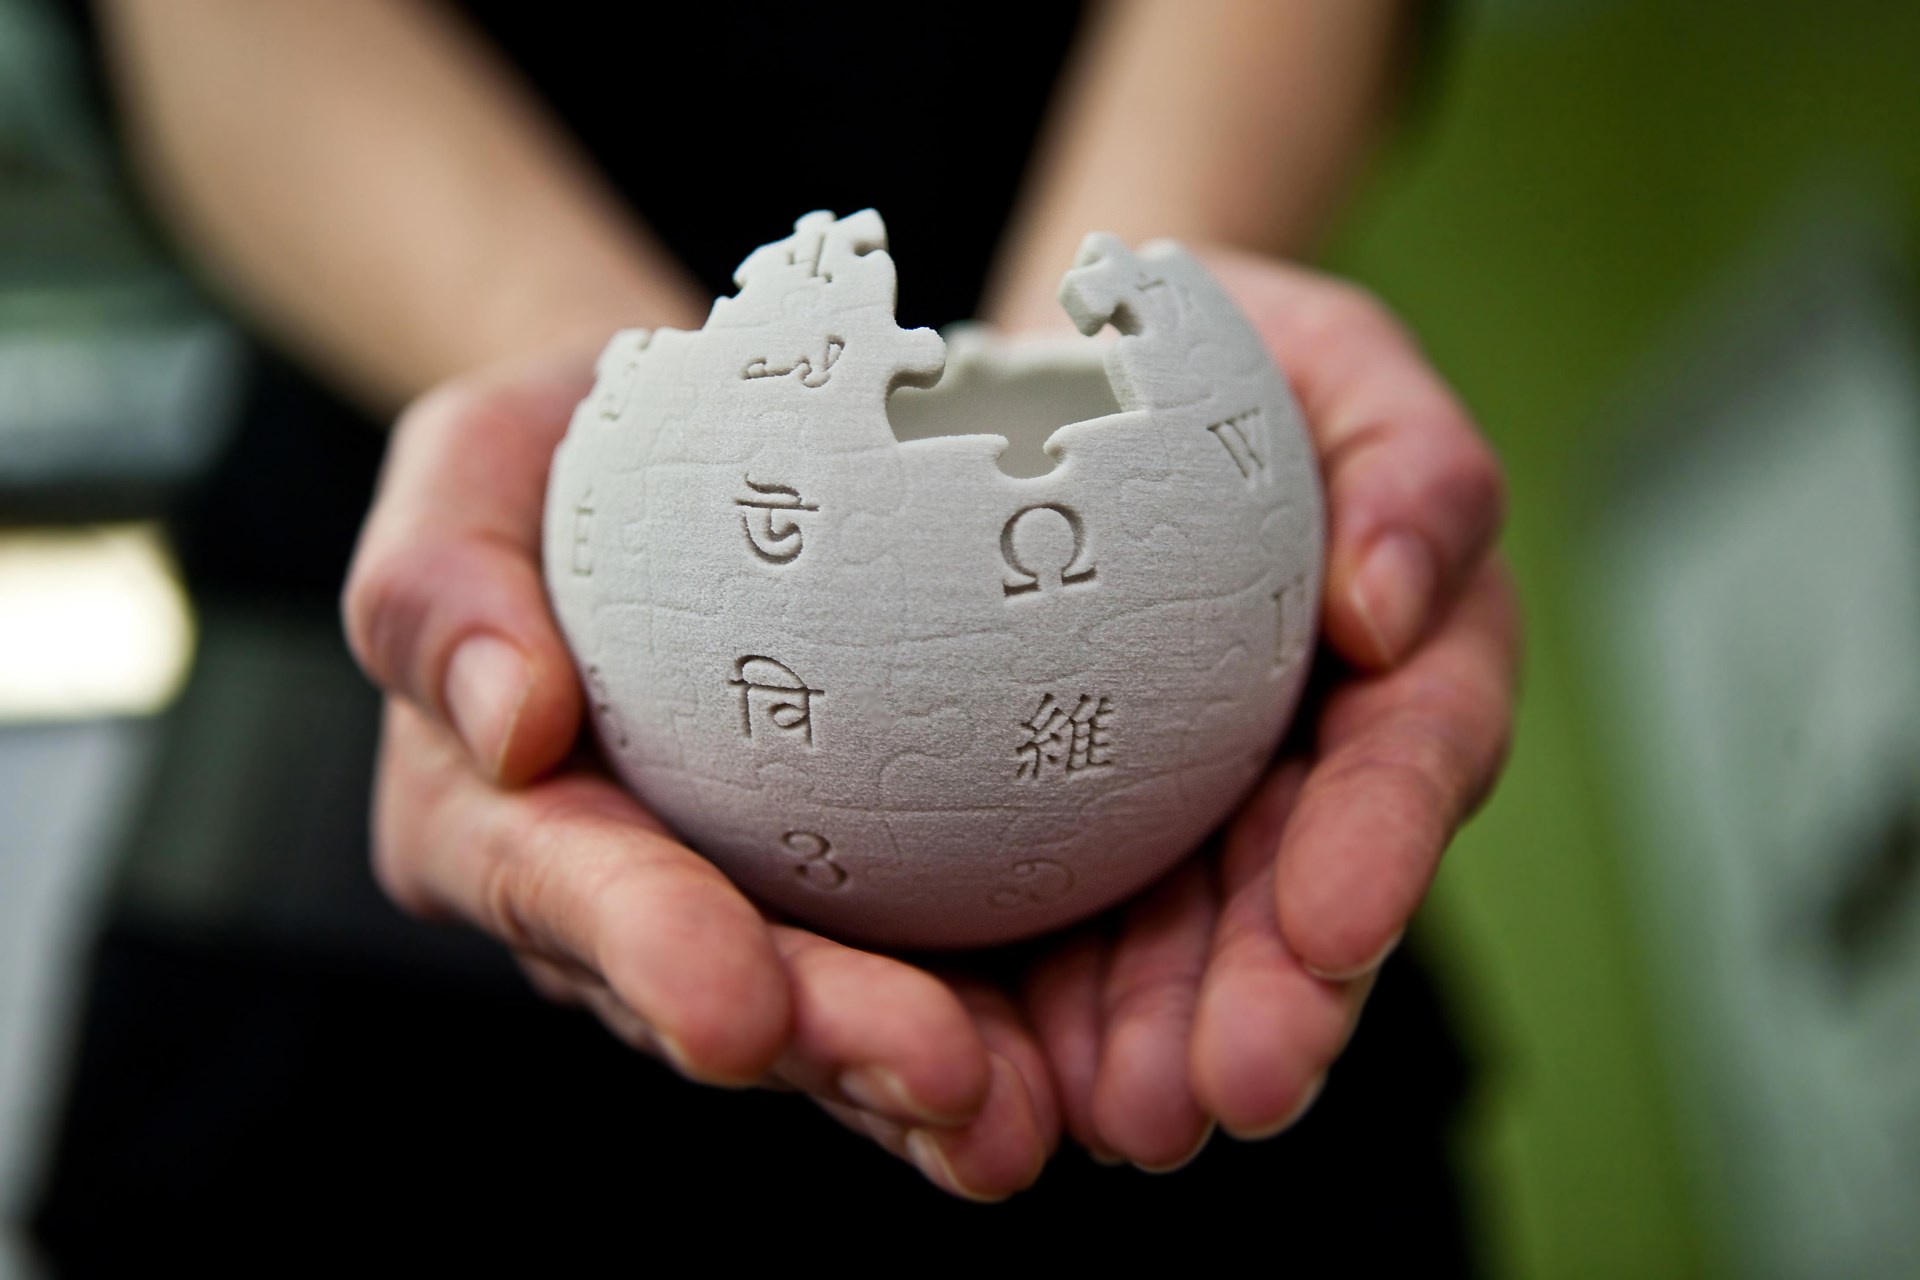  China bloquea por completo el acceso a Wikipedia